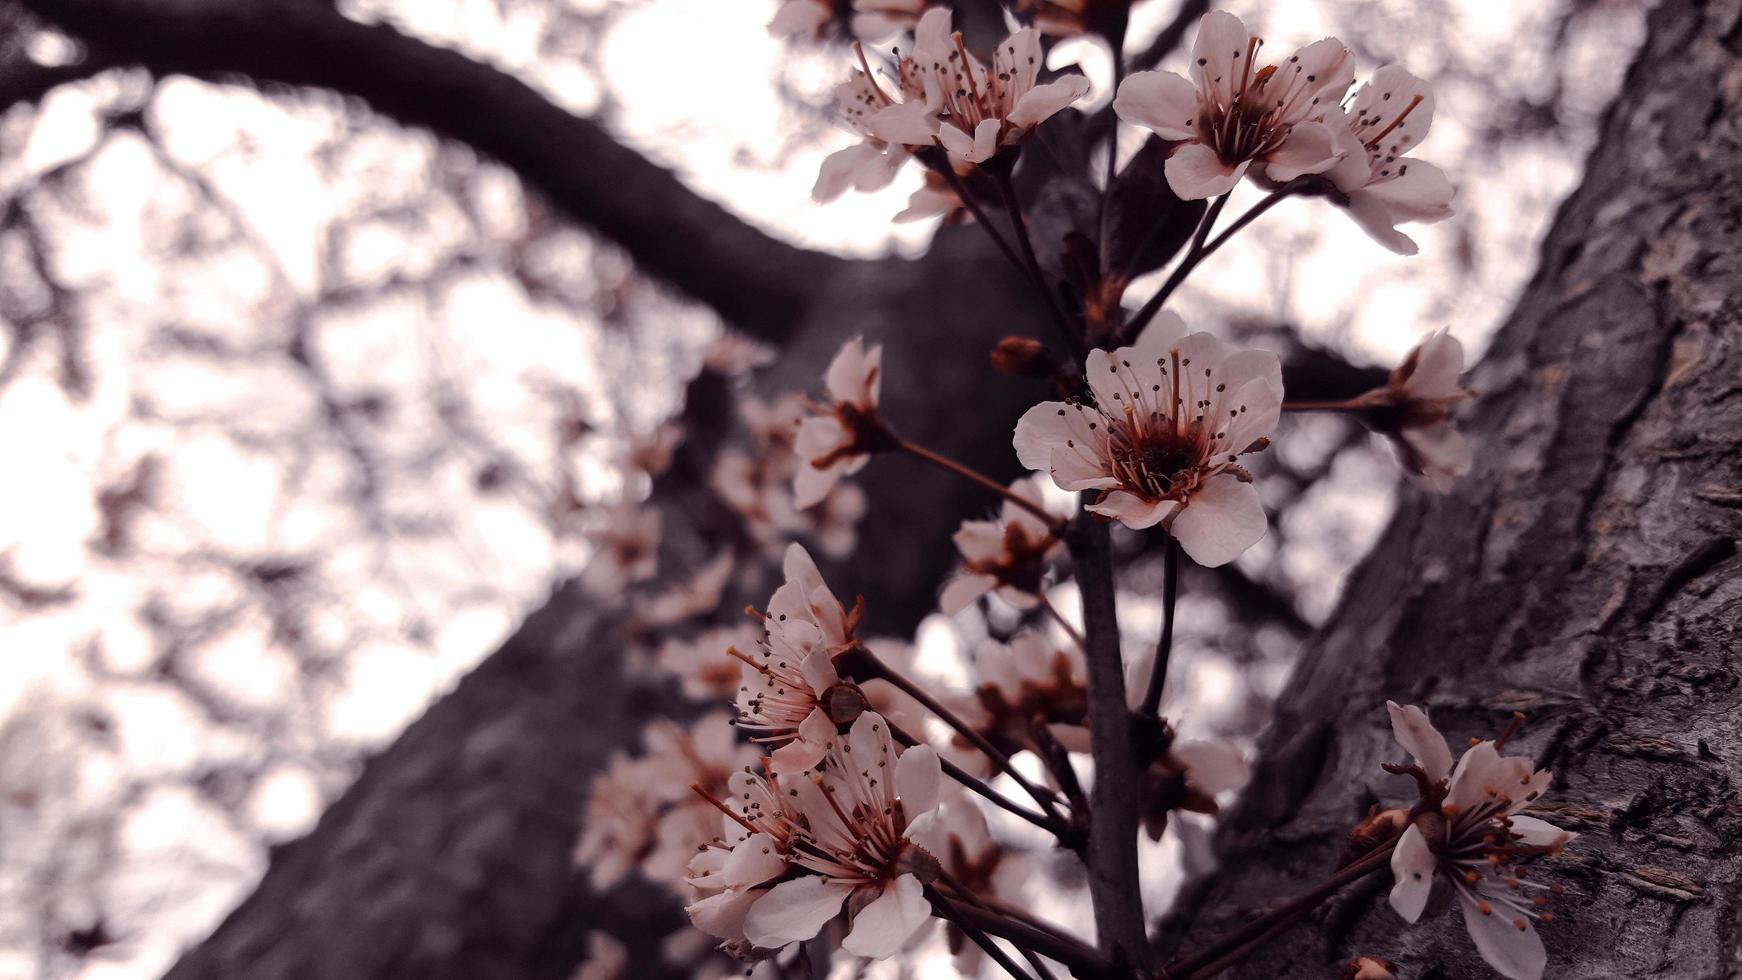 arbre fleur de cerisier photo